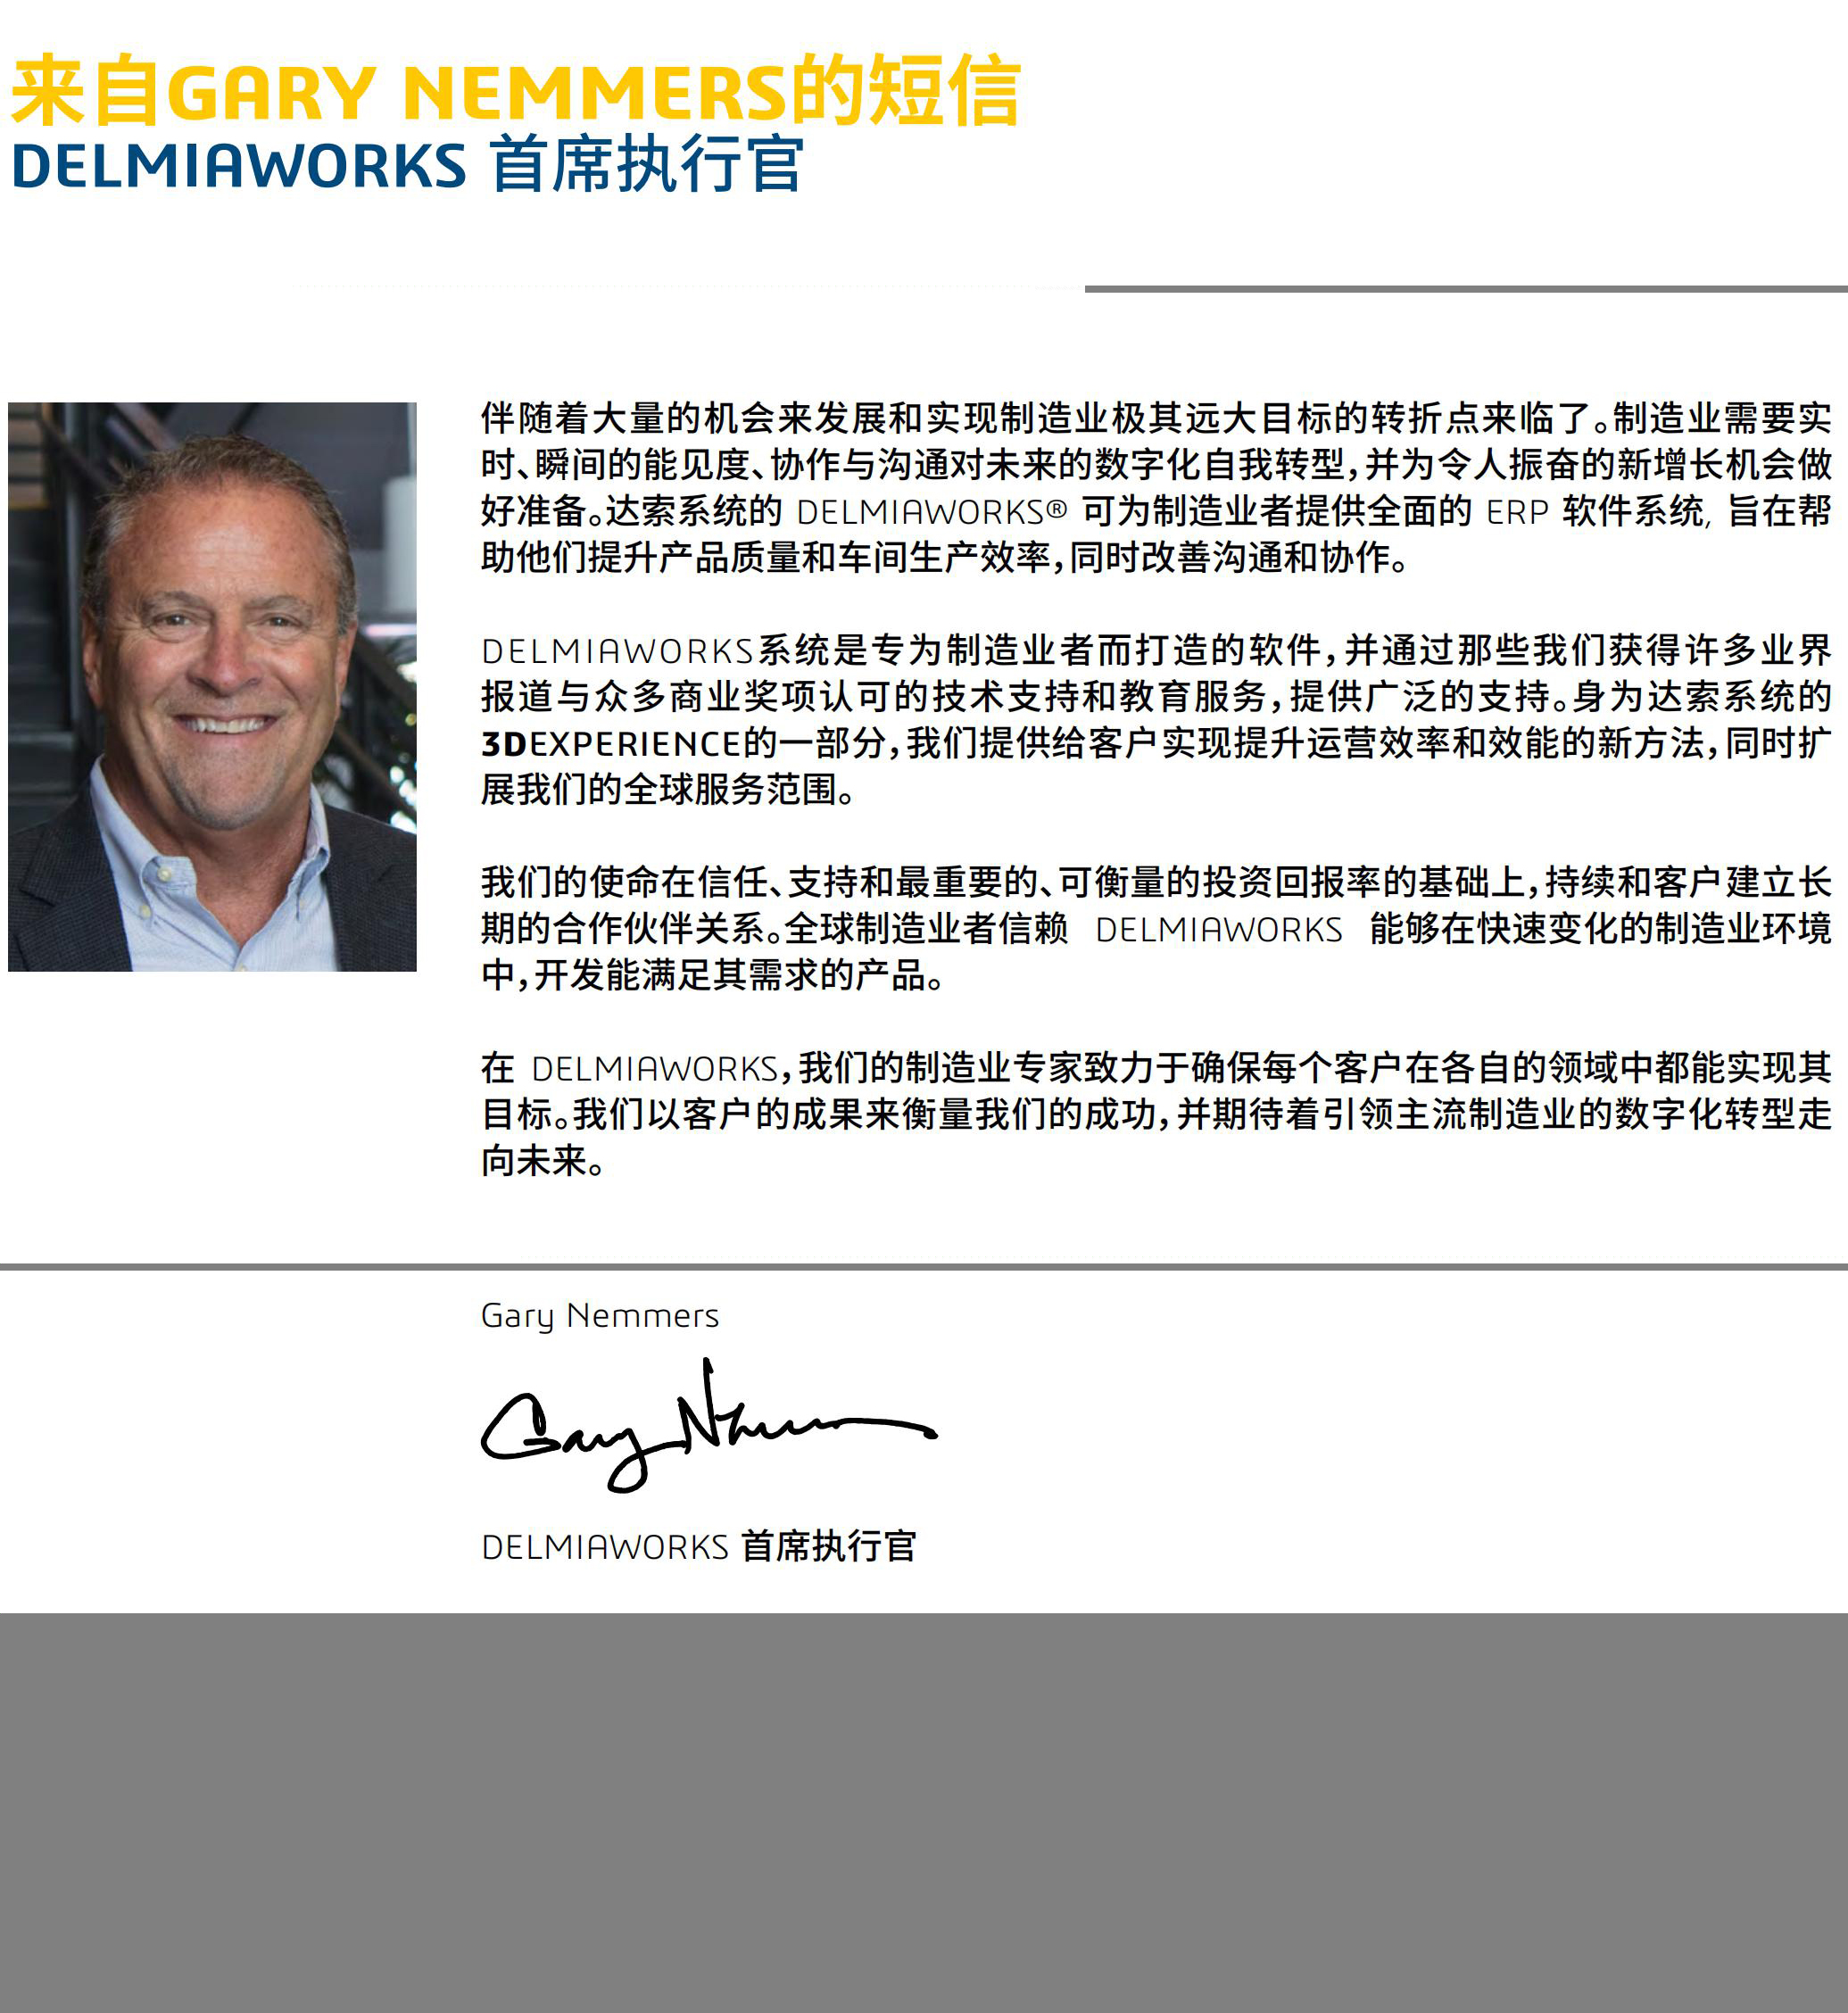 Delmiaworks面向制造业的 ERP 和 MES 软件 - 副本_01.jpg